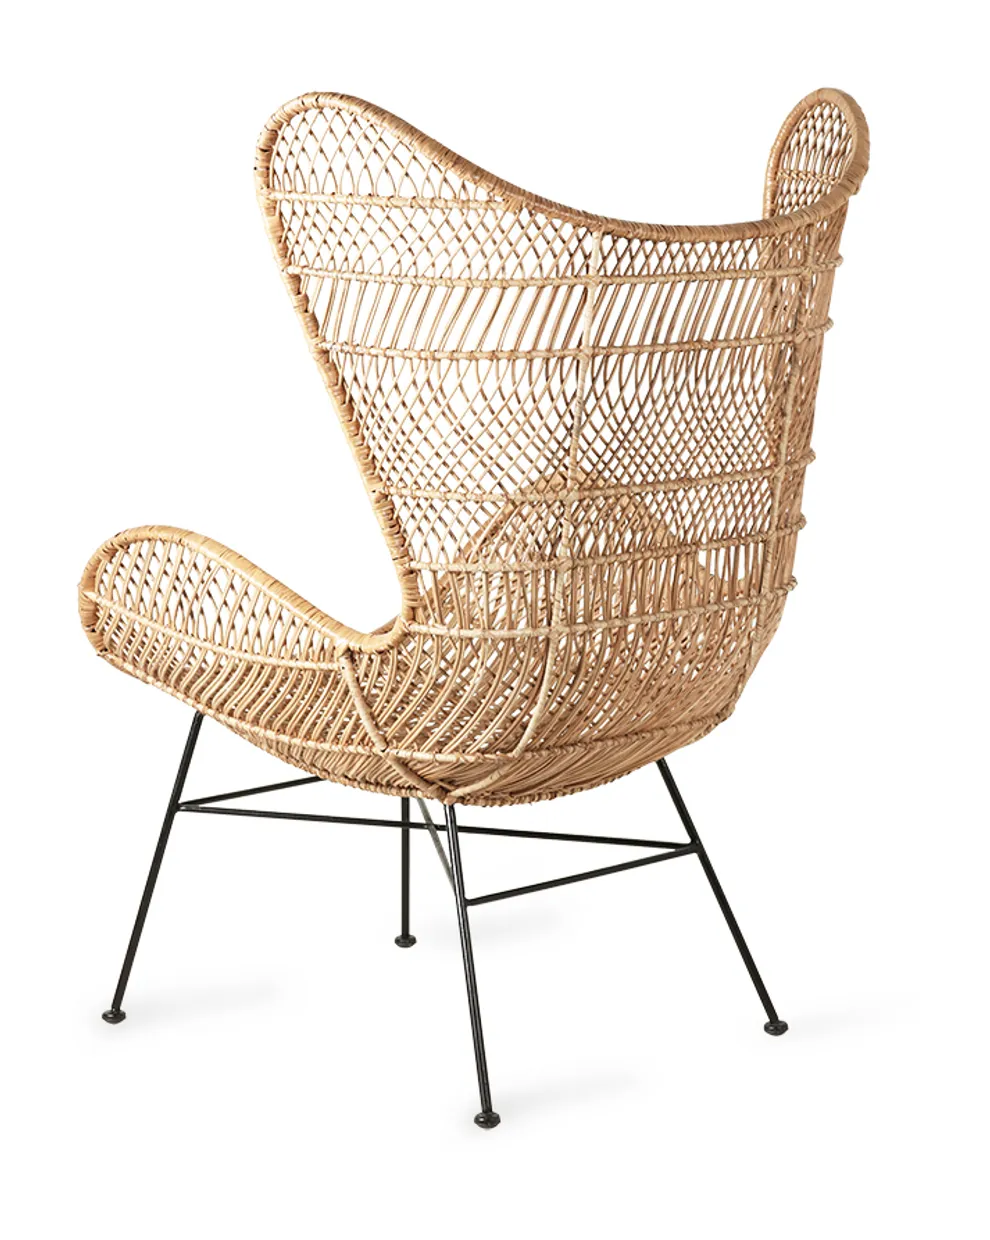 Rattan egg chair natural bohemian